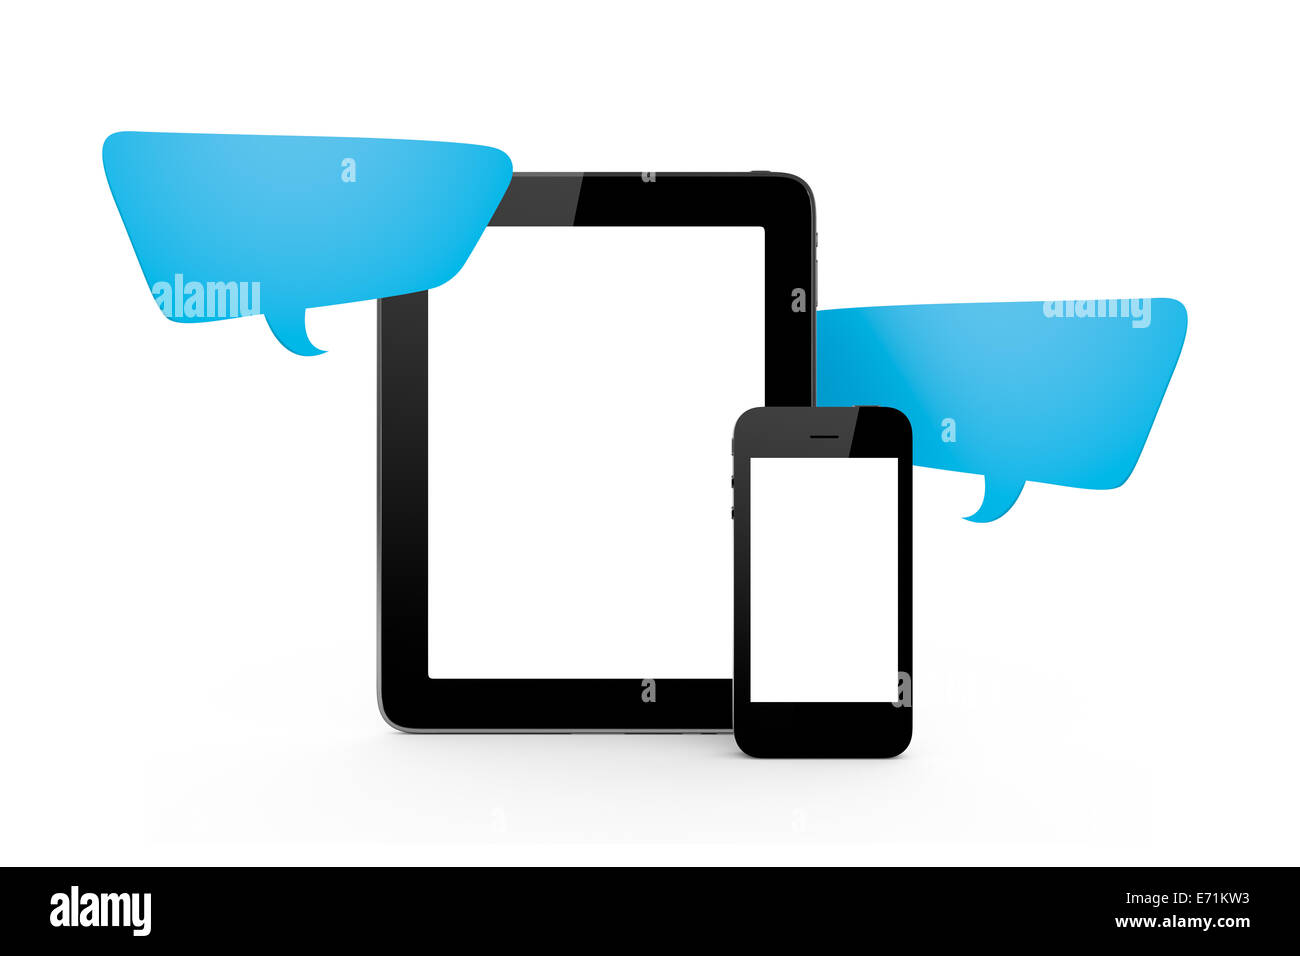 Kommunikations-Technologie-Konzept, blaue Sprechblase mit leeren Bildschirm Smartphone und Tablet, Vorderansicht, Textfreiraum, isoliert Stockfoto